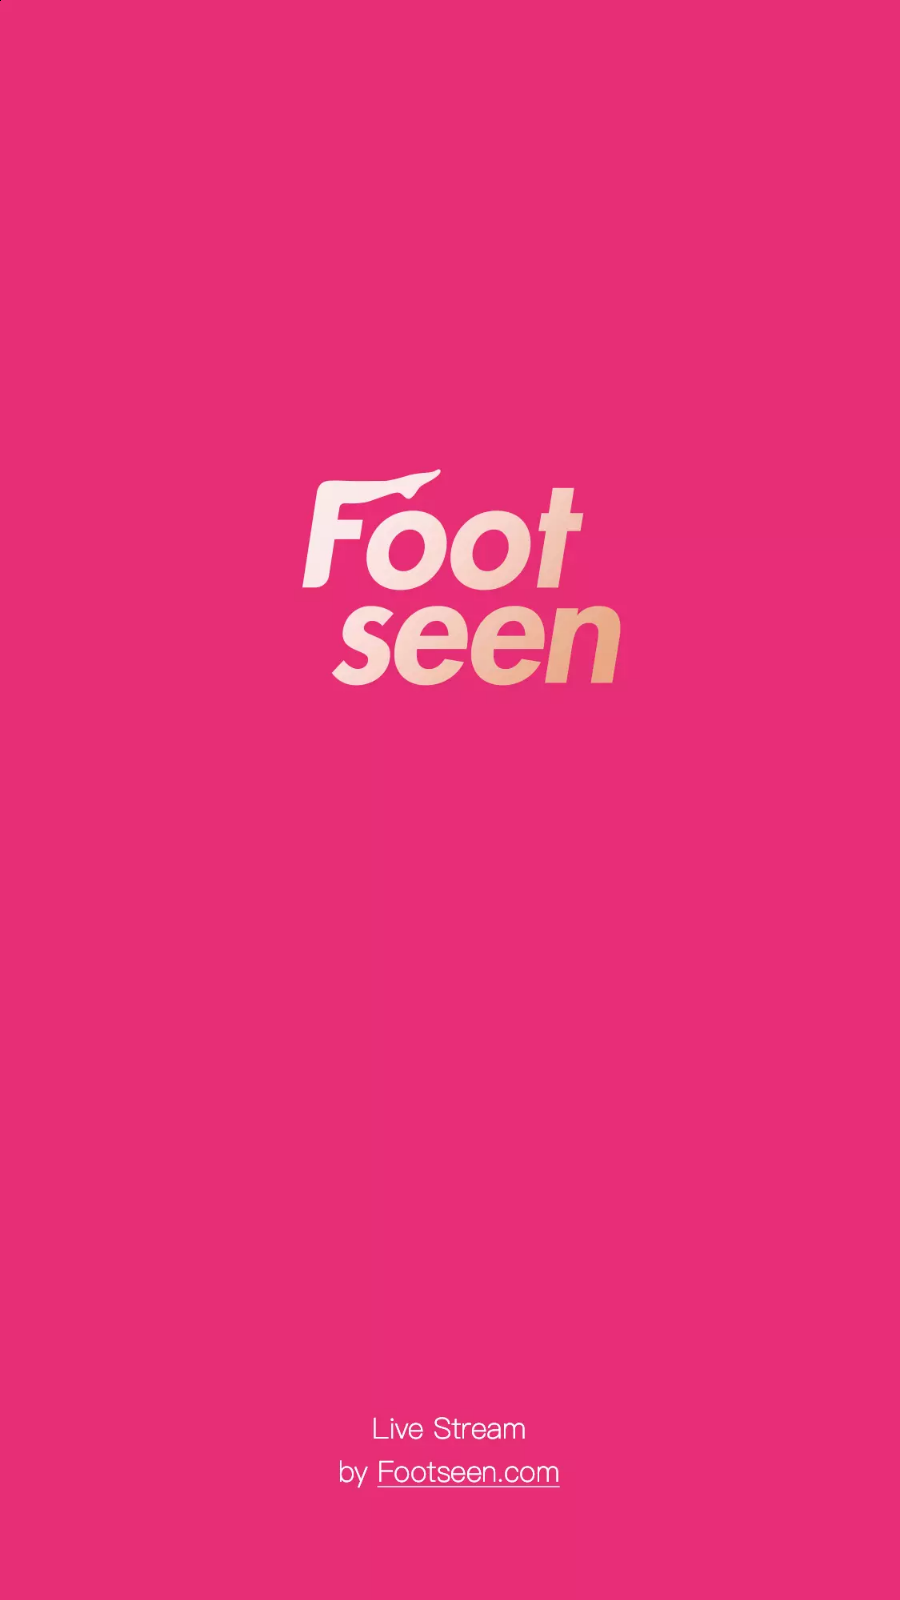 Footseen